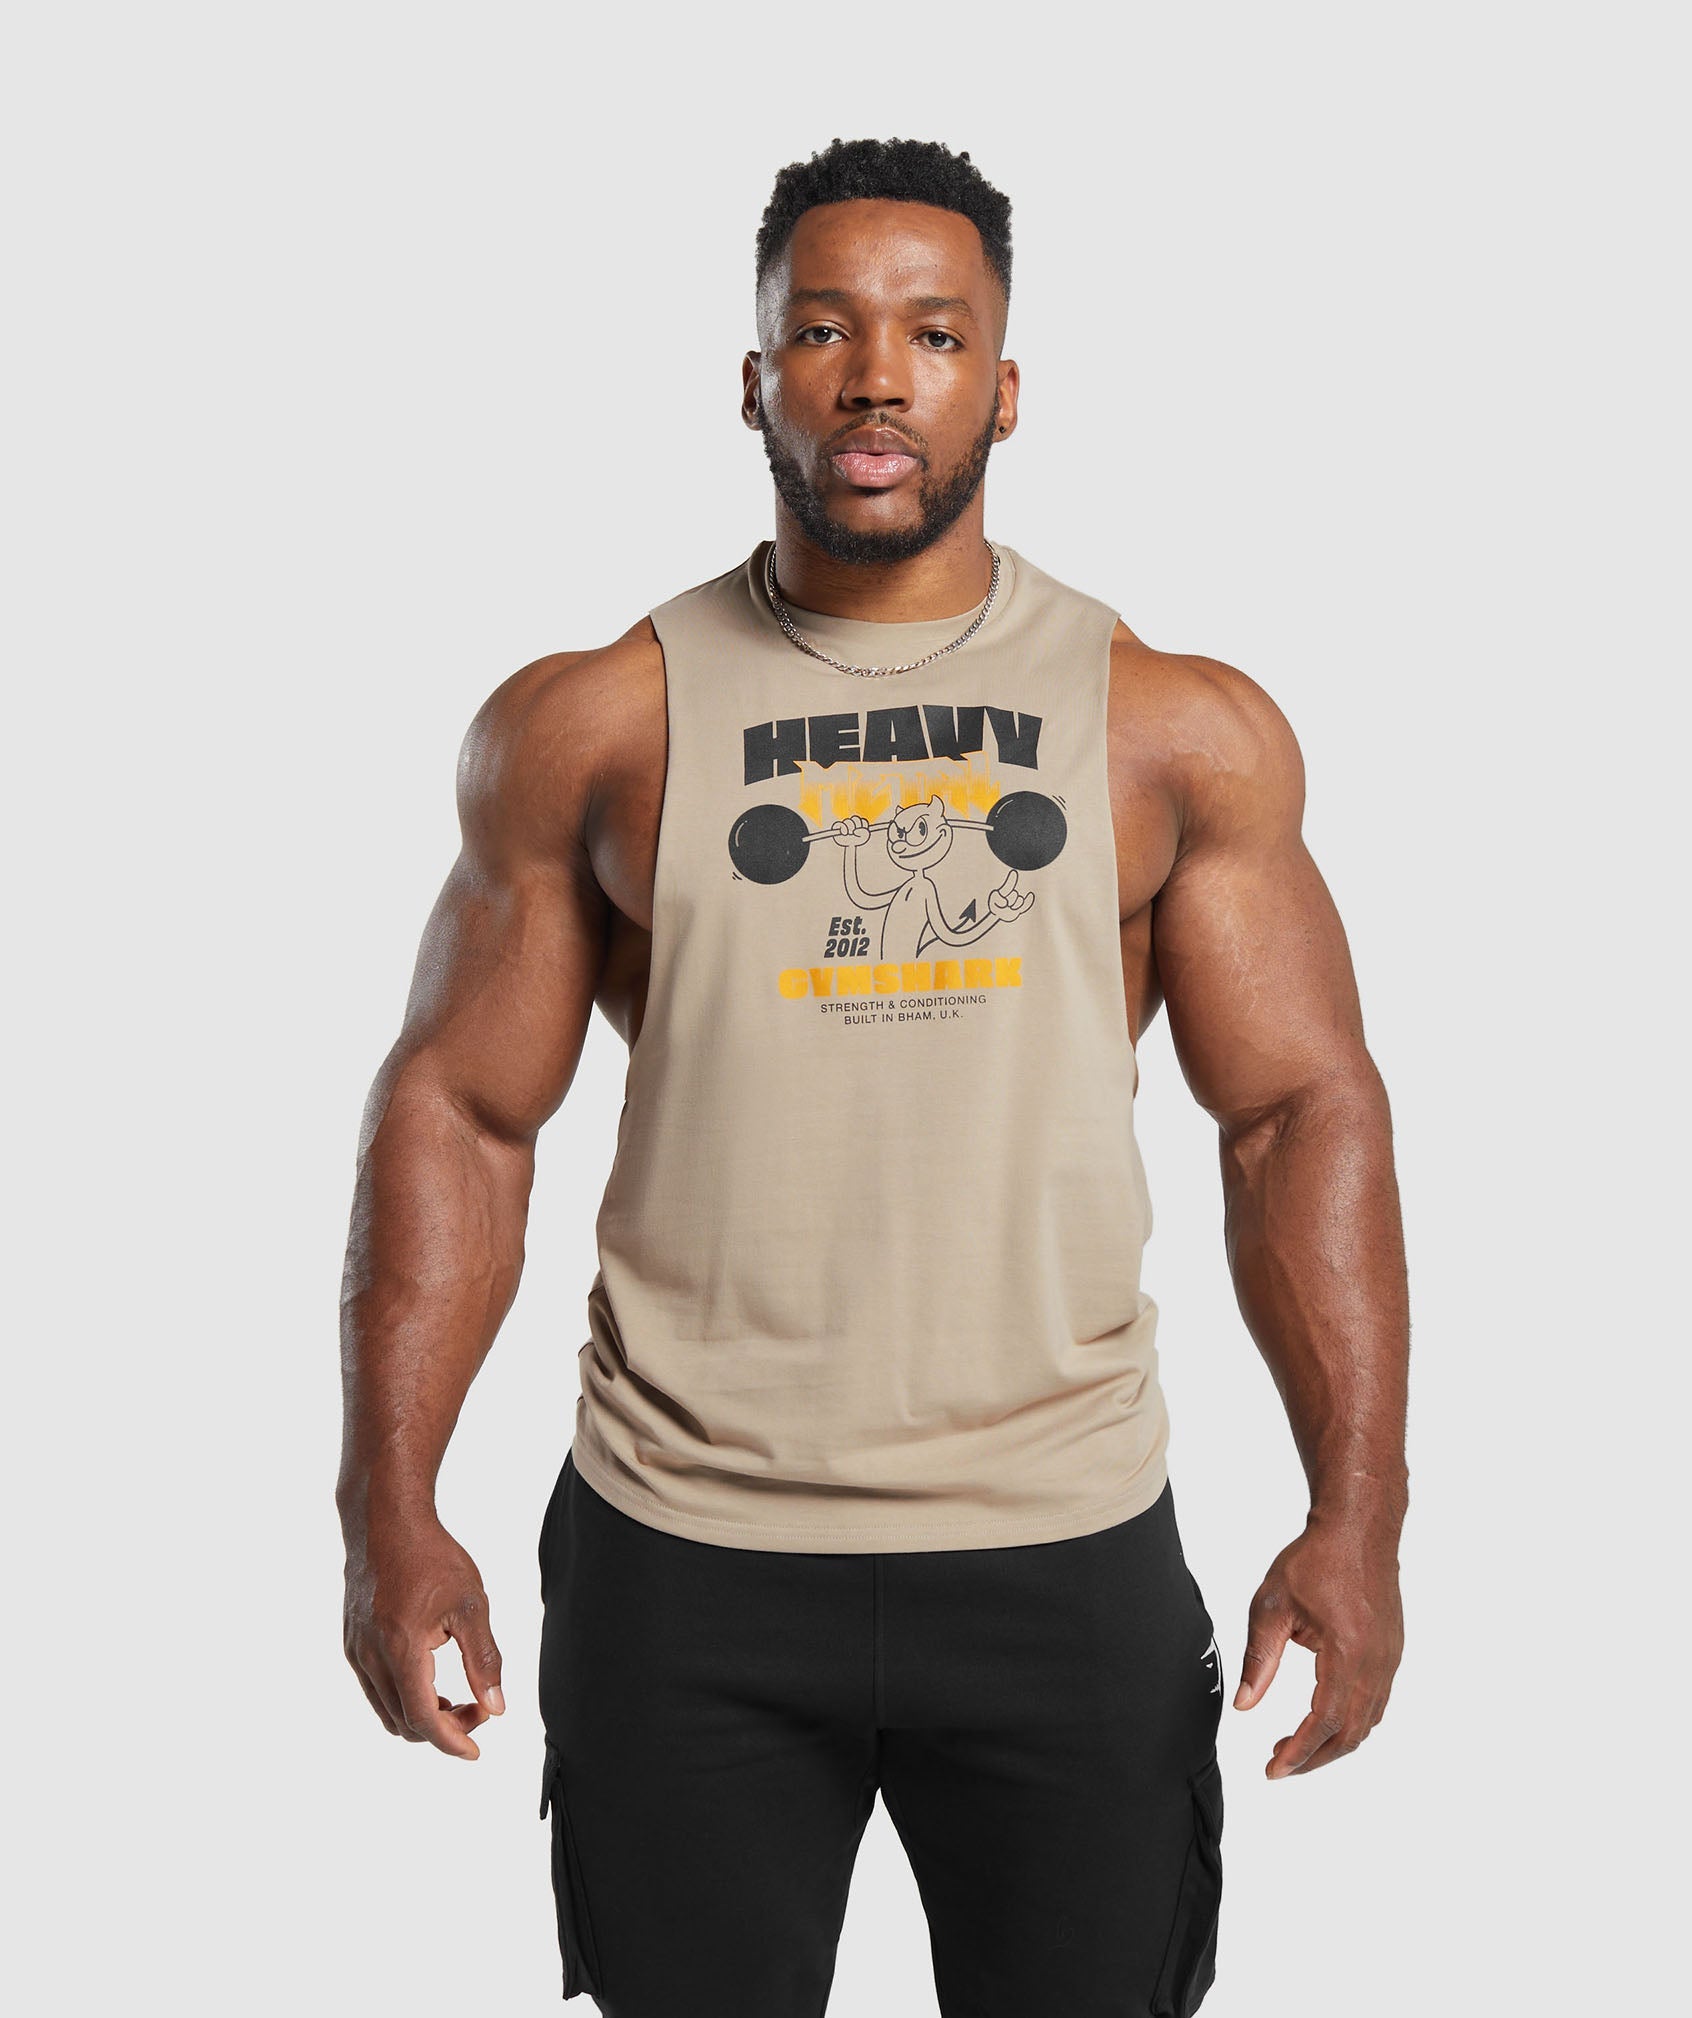 Camisetas de entrenamiento sin mangas para hombres – Camisetas de gimnasio  sin mangas de Gymshark